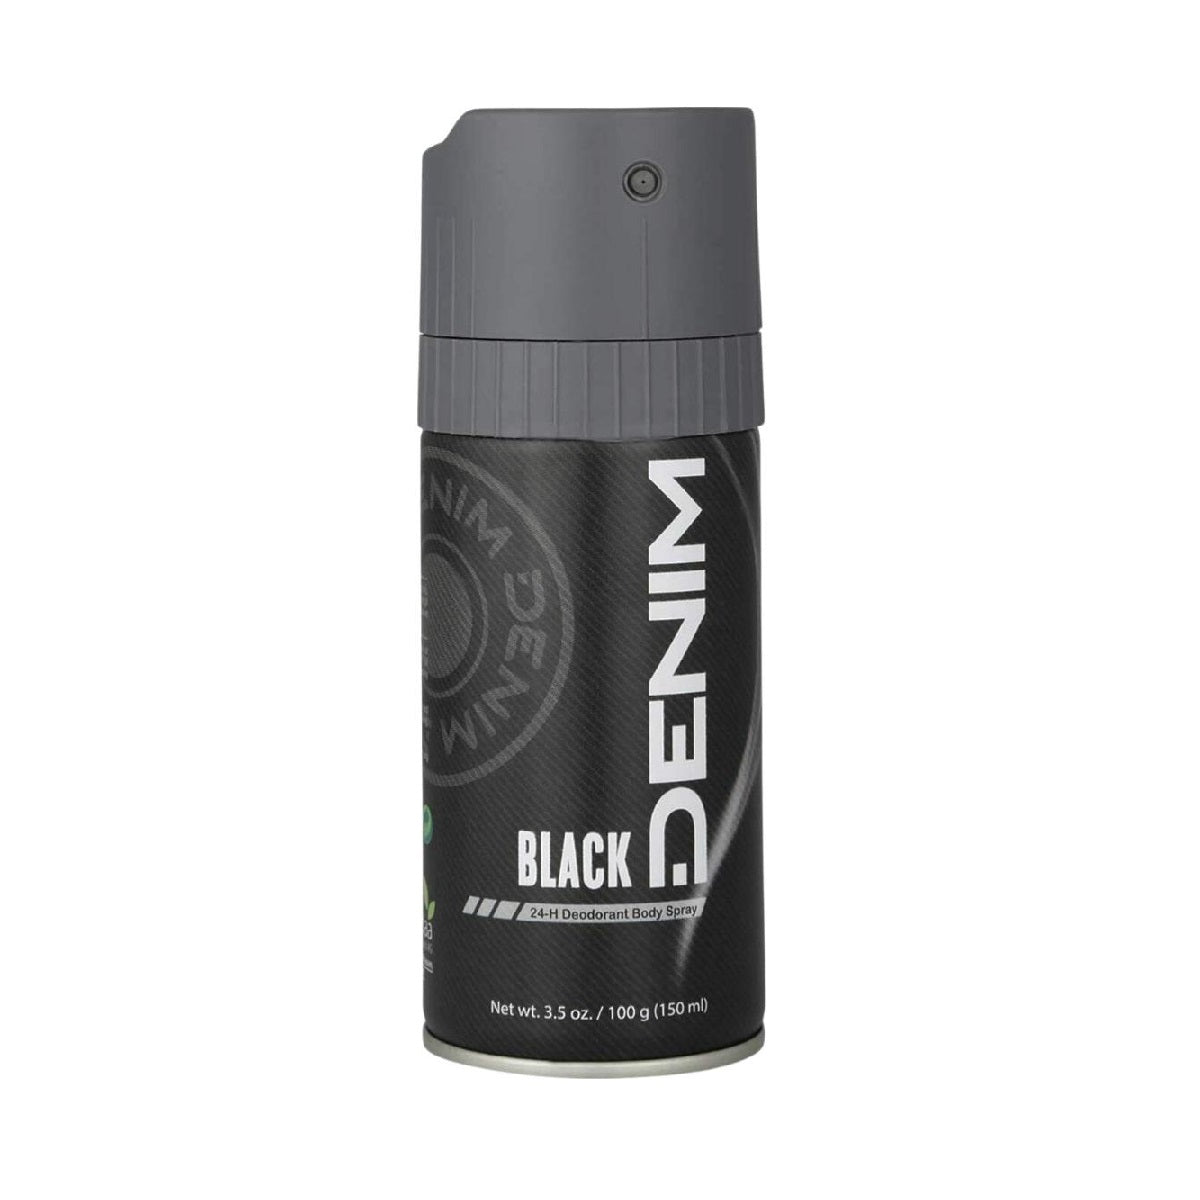 Denim Black deodorant 150ml